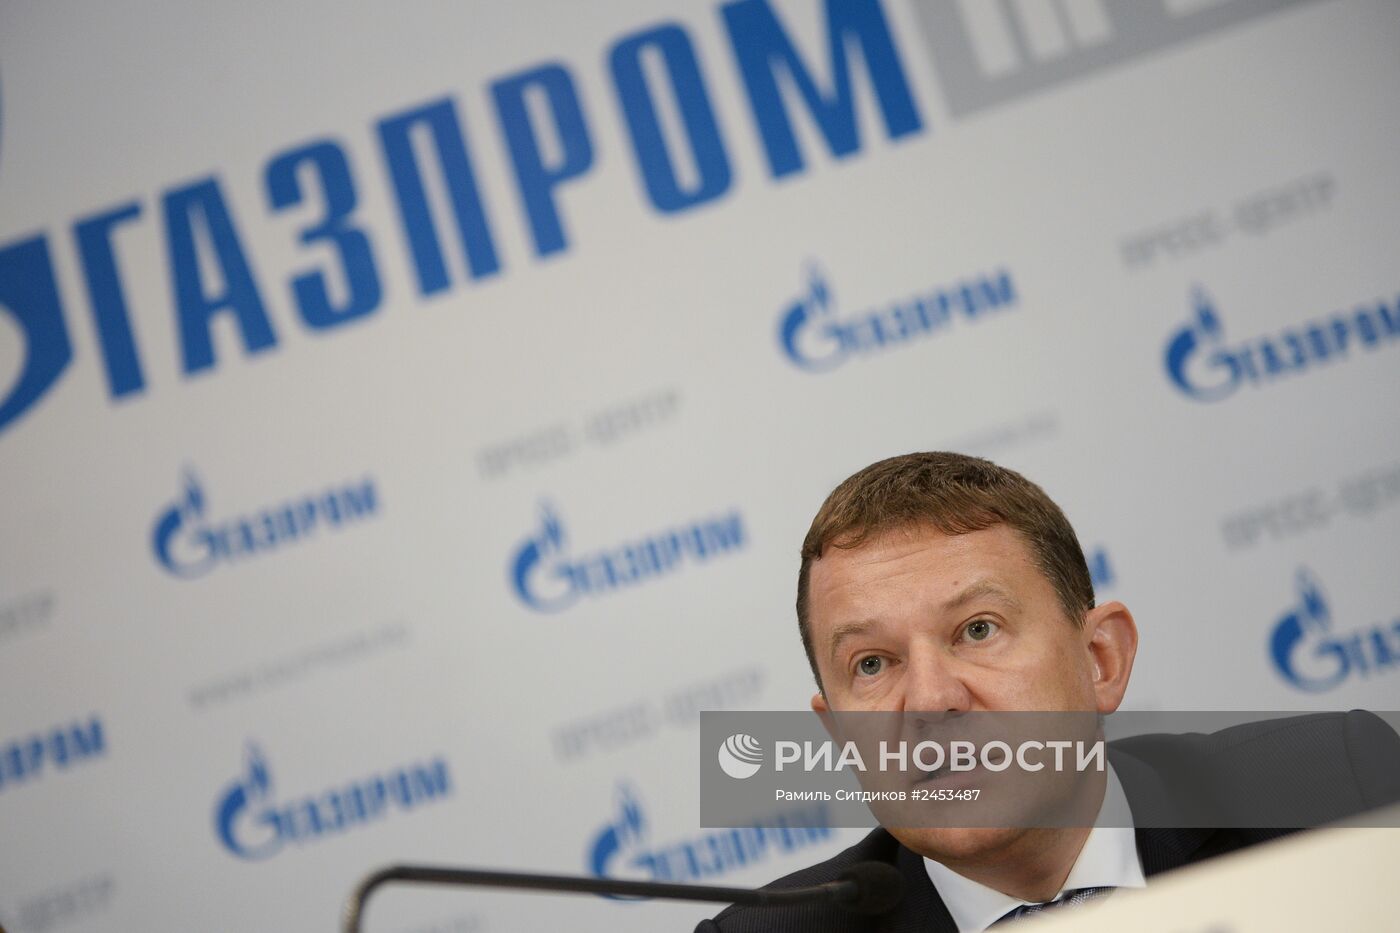 Пресс-конференция "Газпром" "Финансово-экономическая политика ОАО "Газпром"